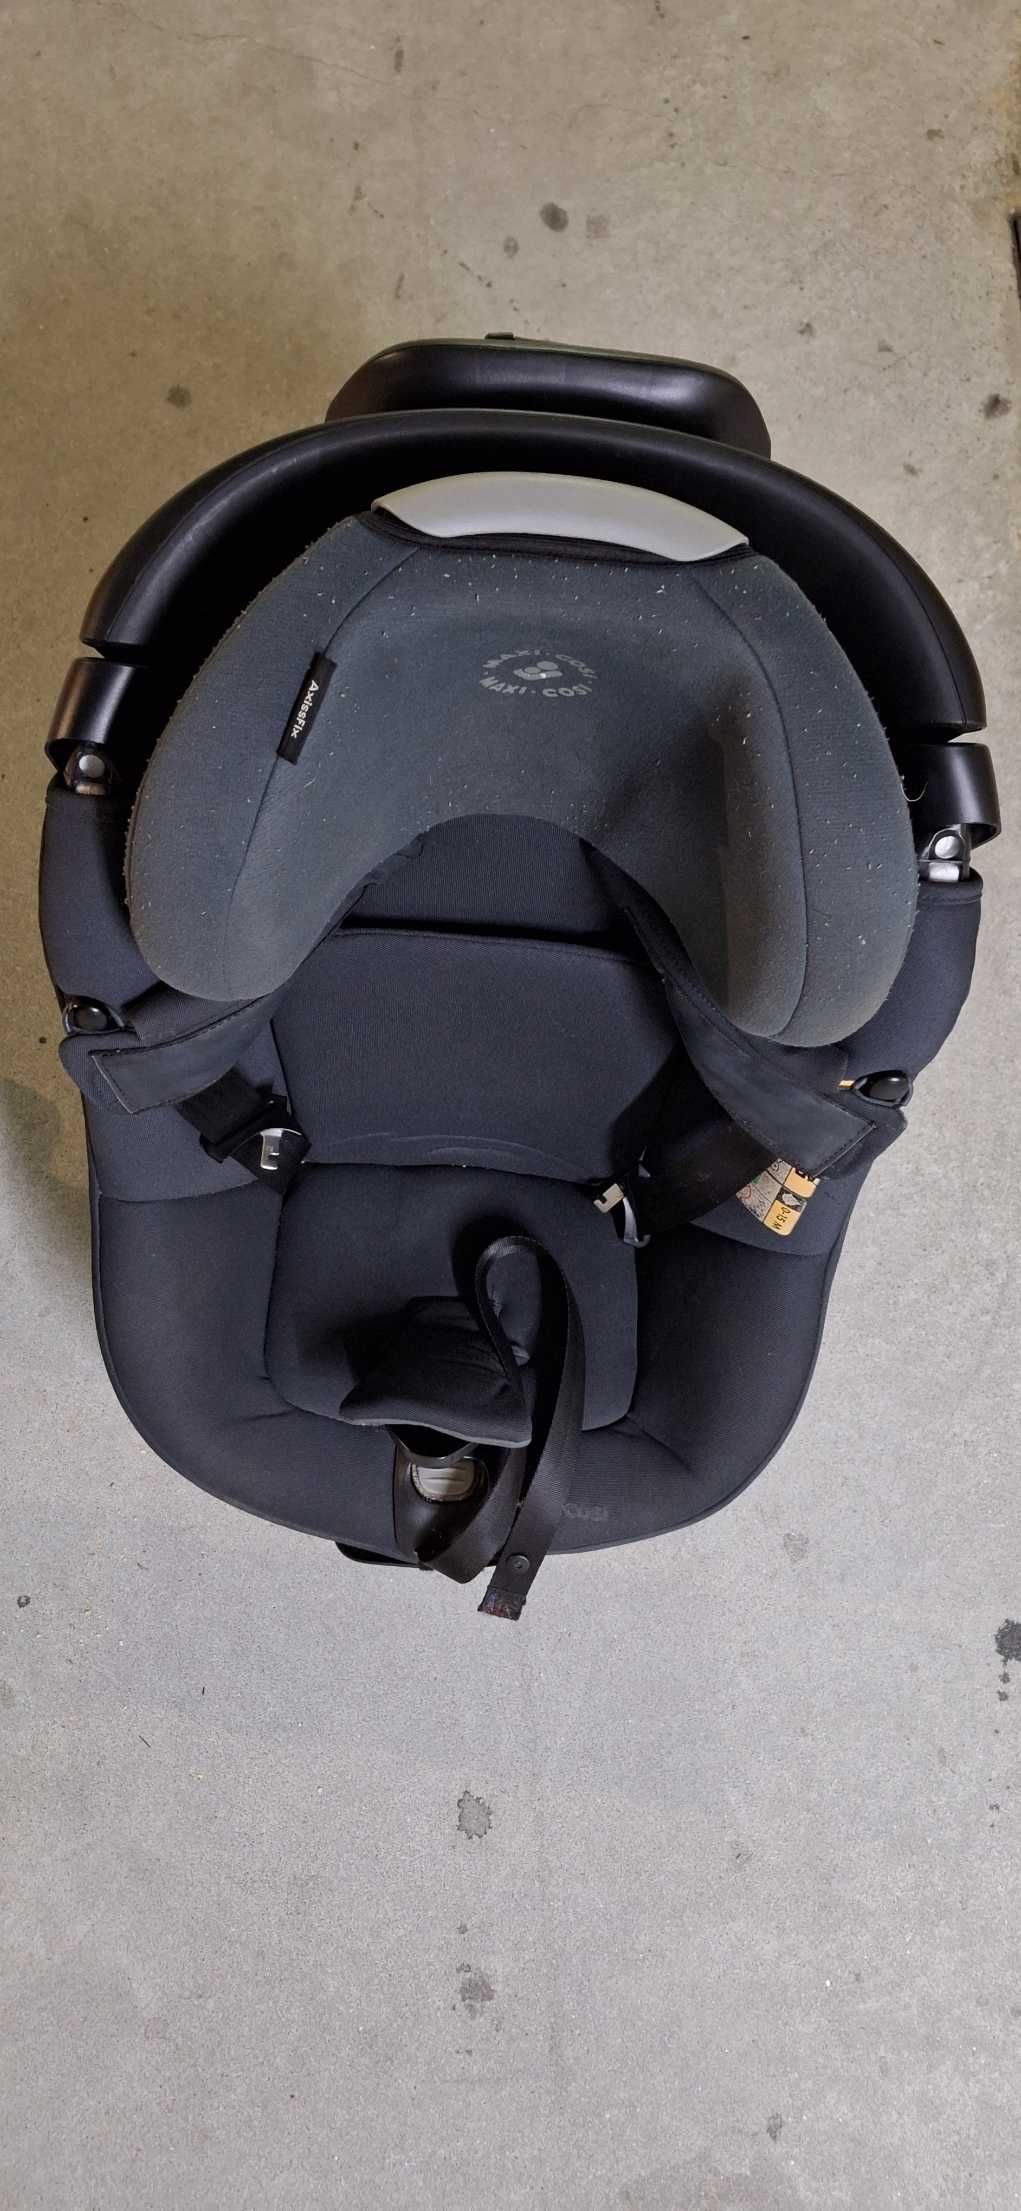 Auto Cadeira de Bébé da "Maxi-Cosi" modelo "AxissFix"